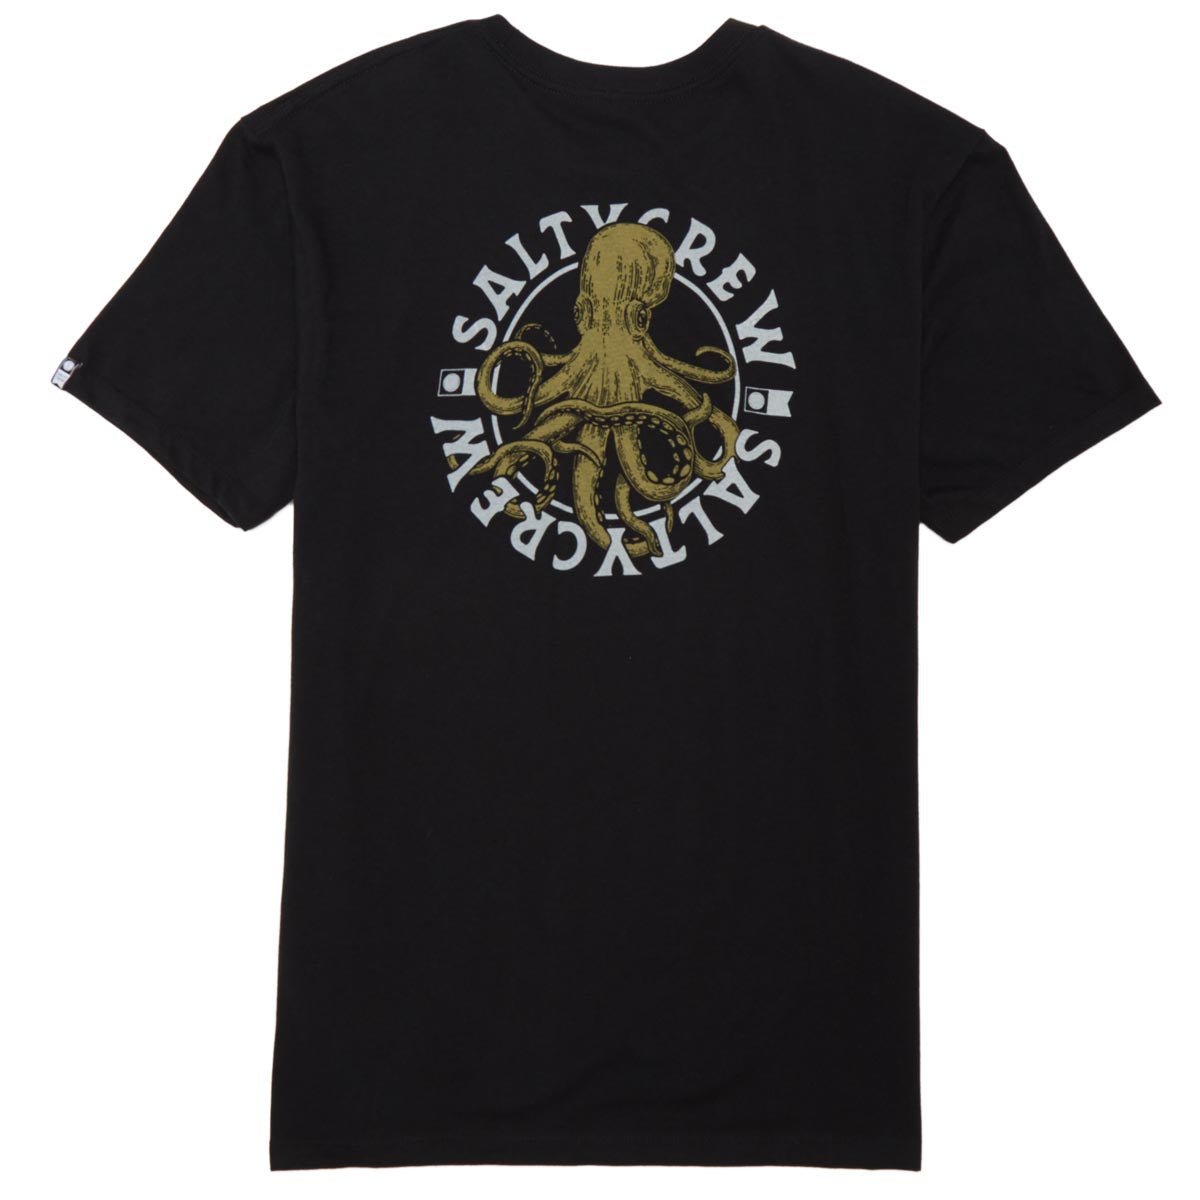 Salty Crew Tentacles Premium T-Shirt - Black image 1